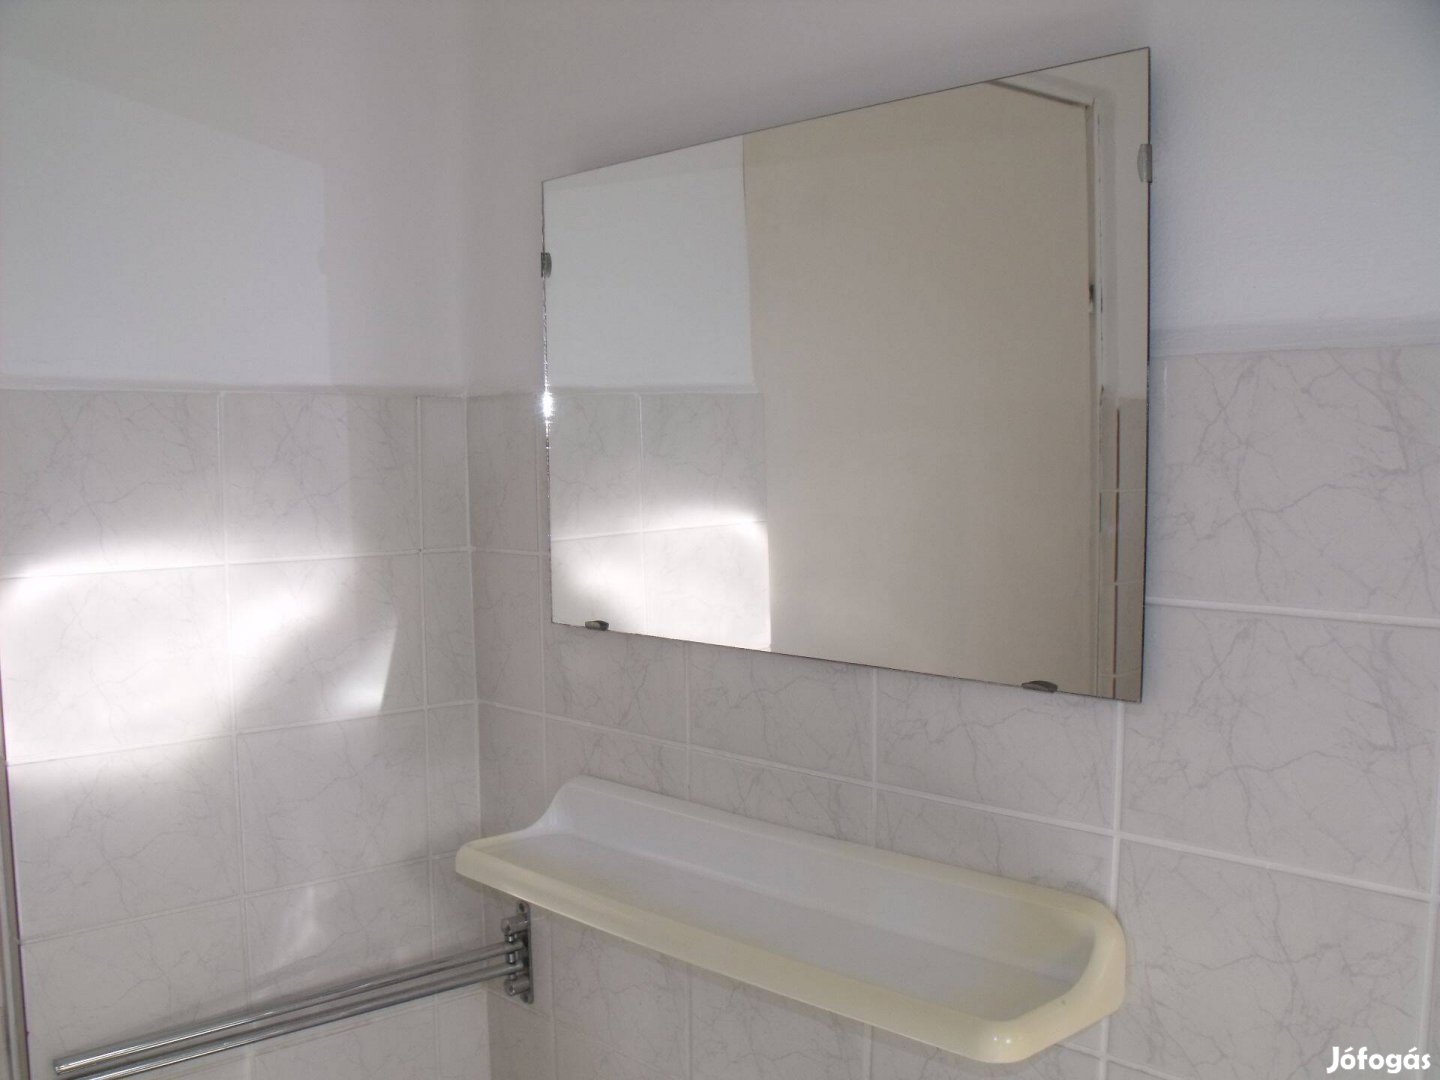 Lakásfelújítás: fürdőszoba polc és nagy tükör